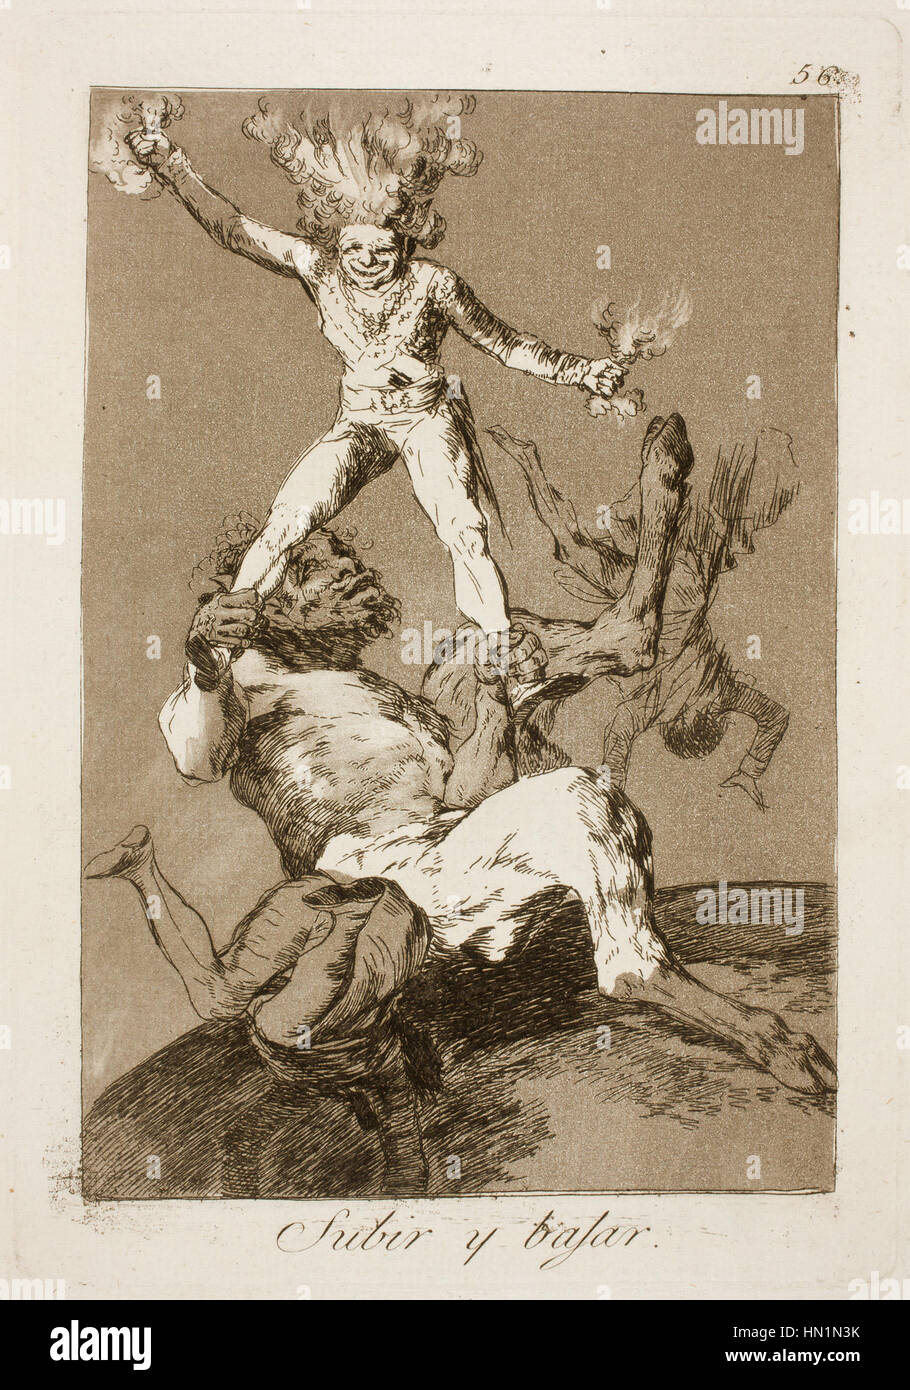 Museo del Prado - Goya - Caprichos - No. 56 - Subir y bajar Stock Photo